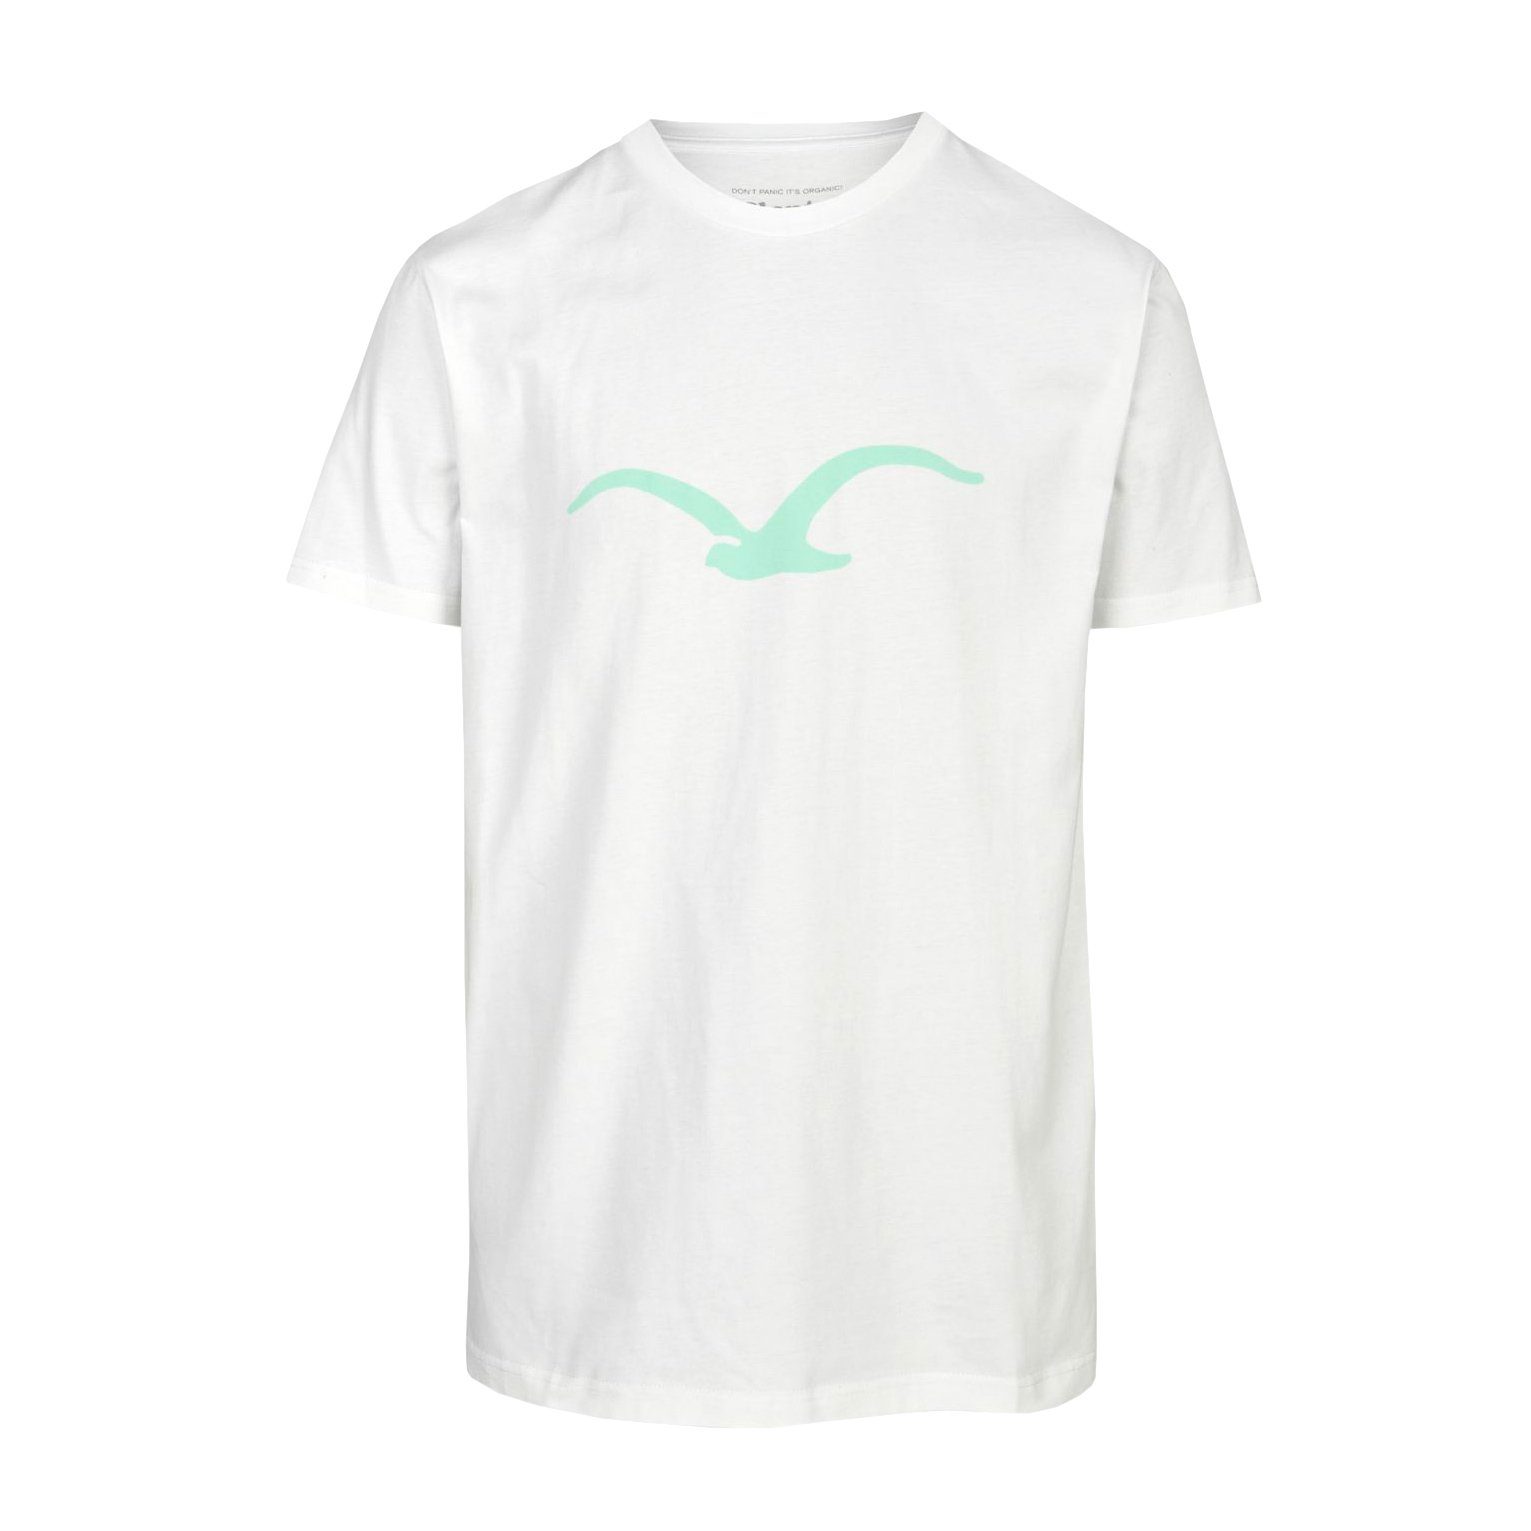 Cleptomanicx T-Shirt Herren online kaufen | OTTO